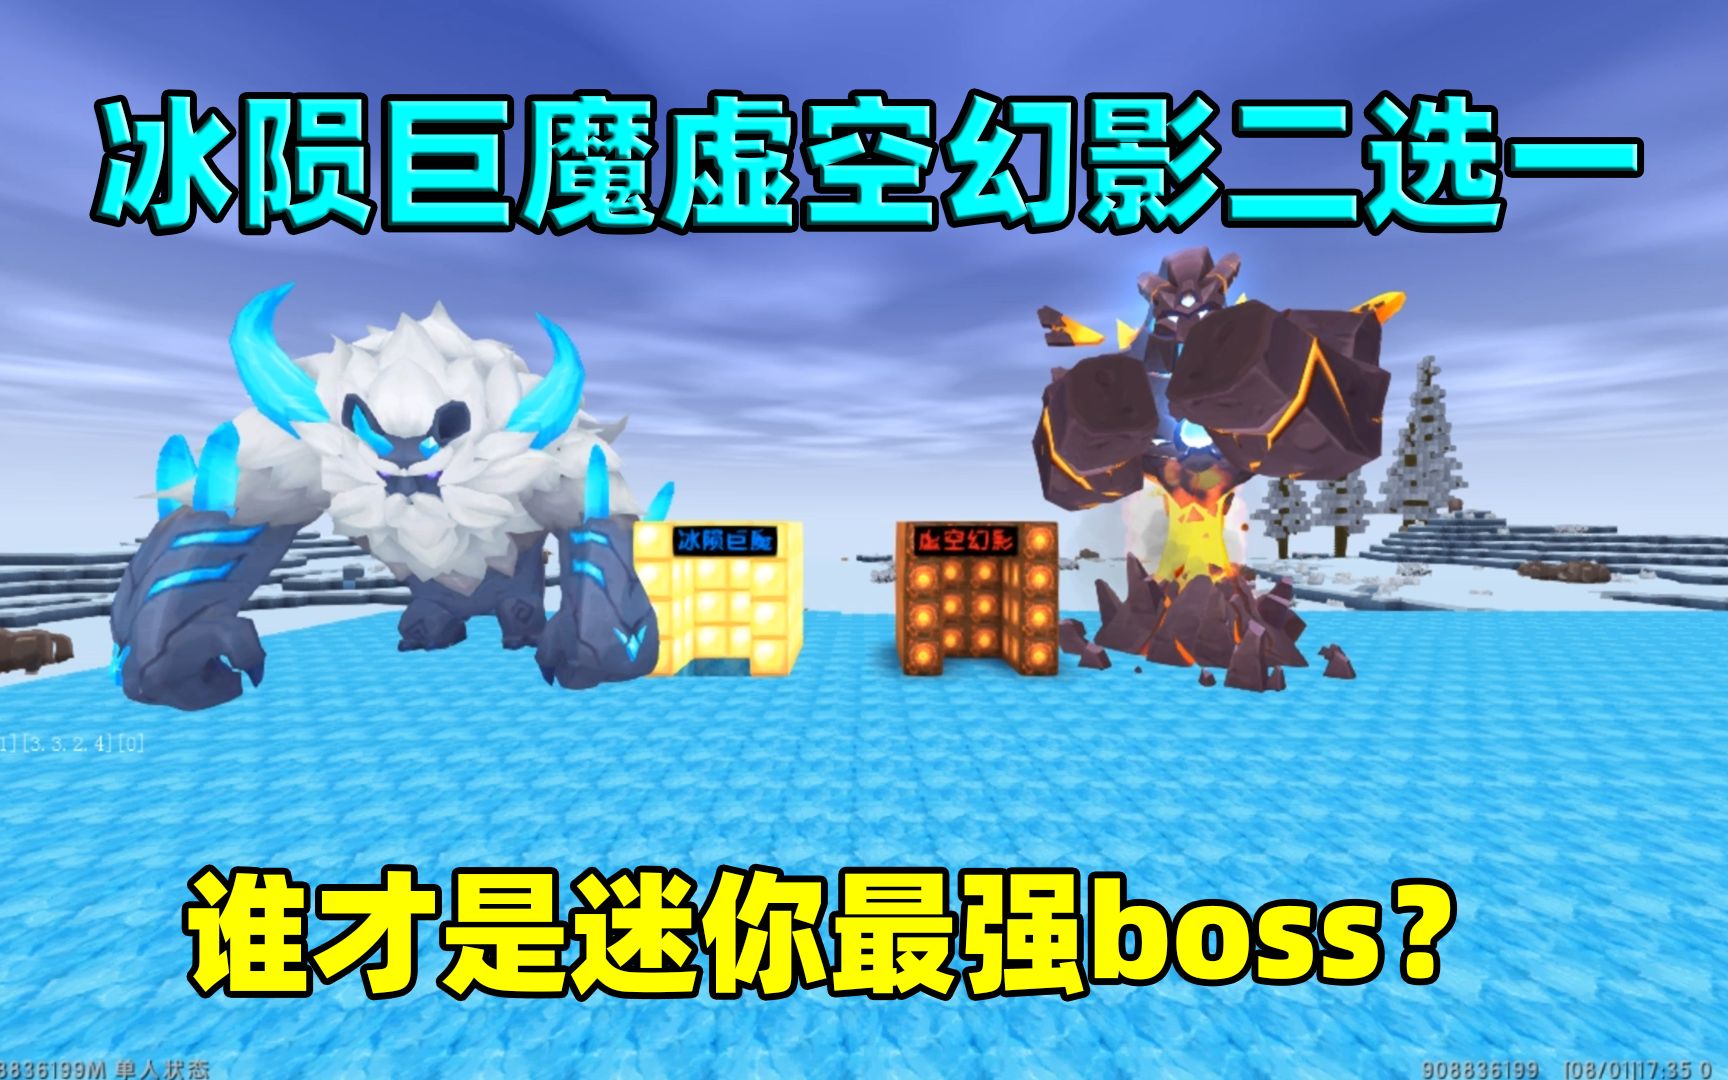 迷你世界:冰陨巨魔虚空幻影二选一!谁才是迷你最强boss呢?